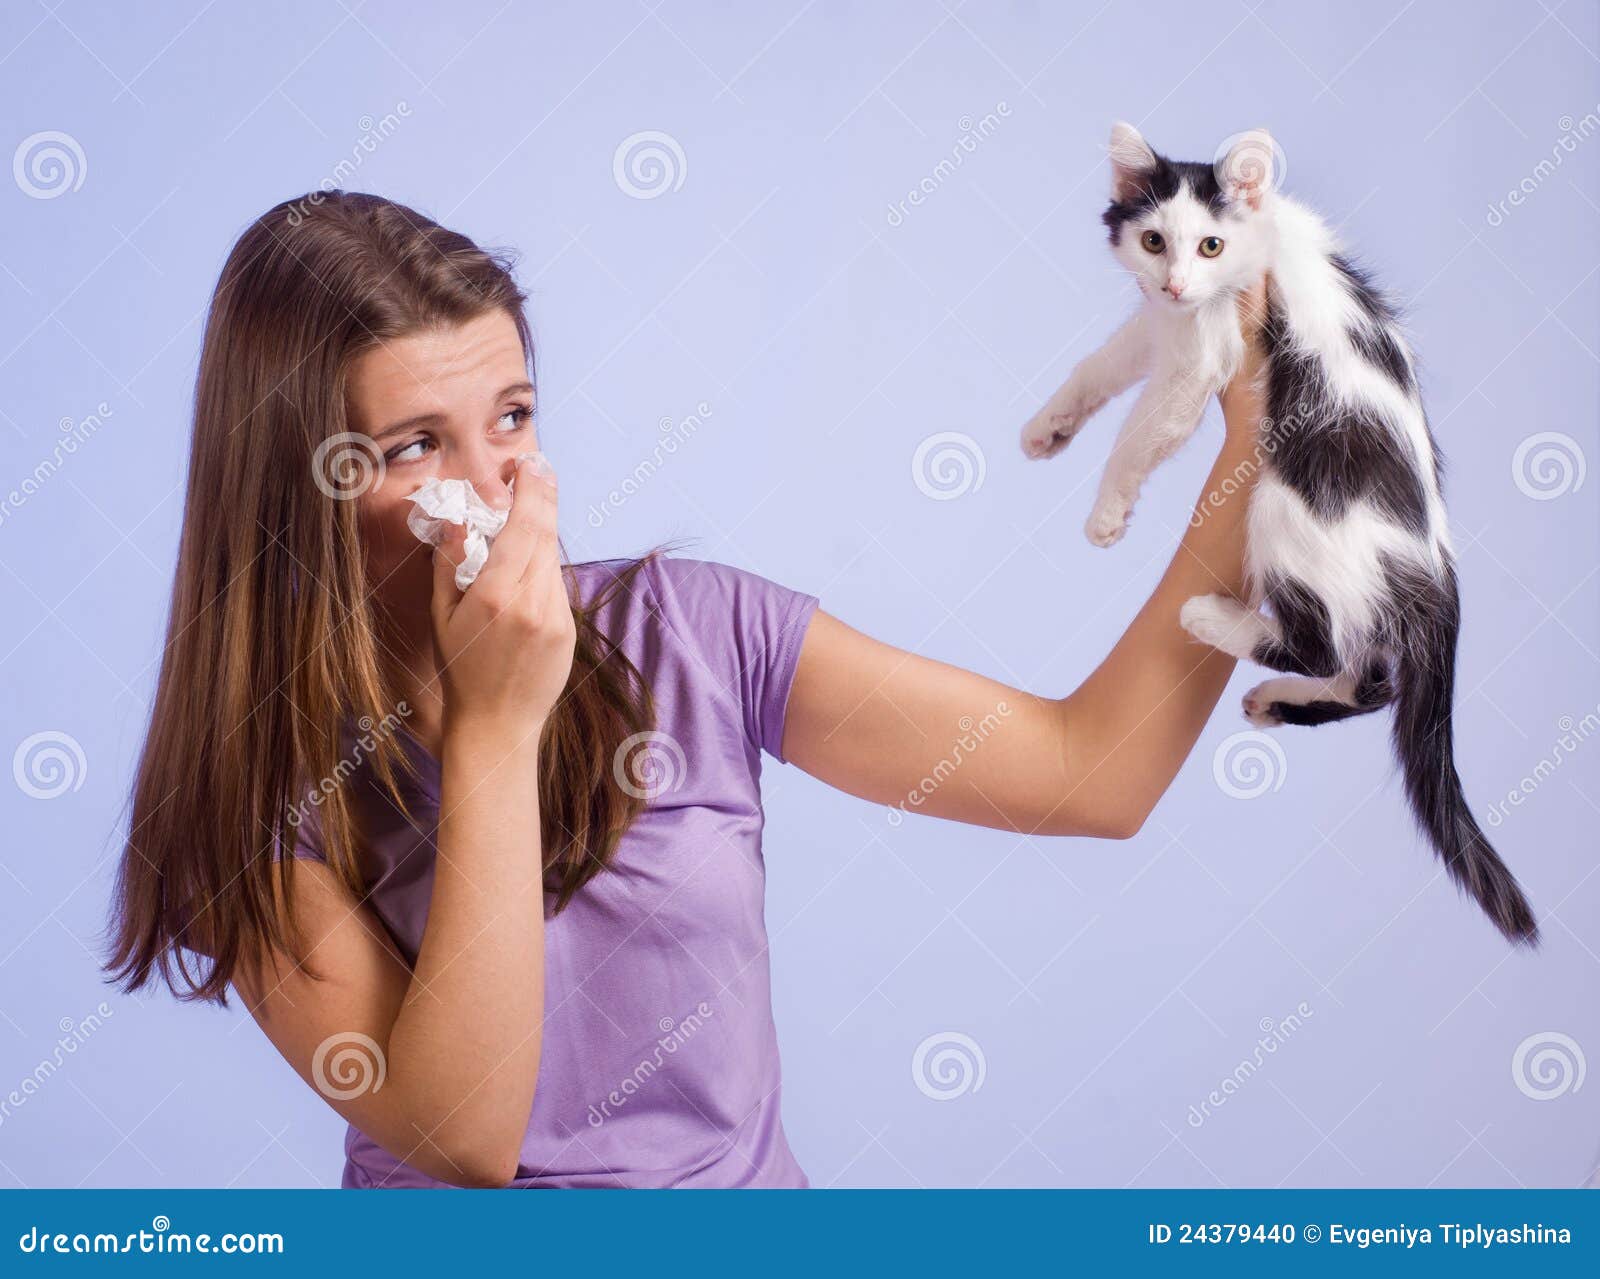 allergic to cat